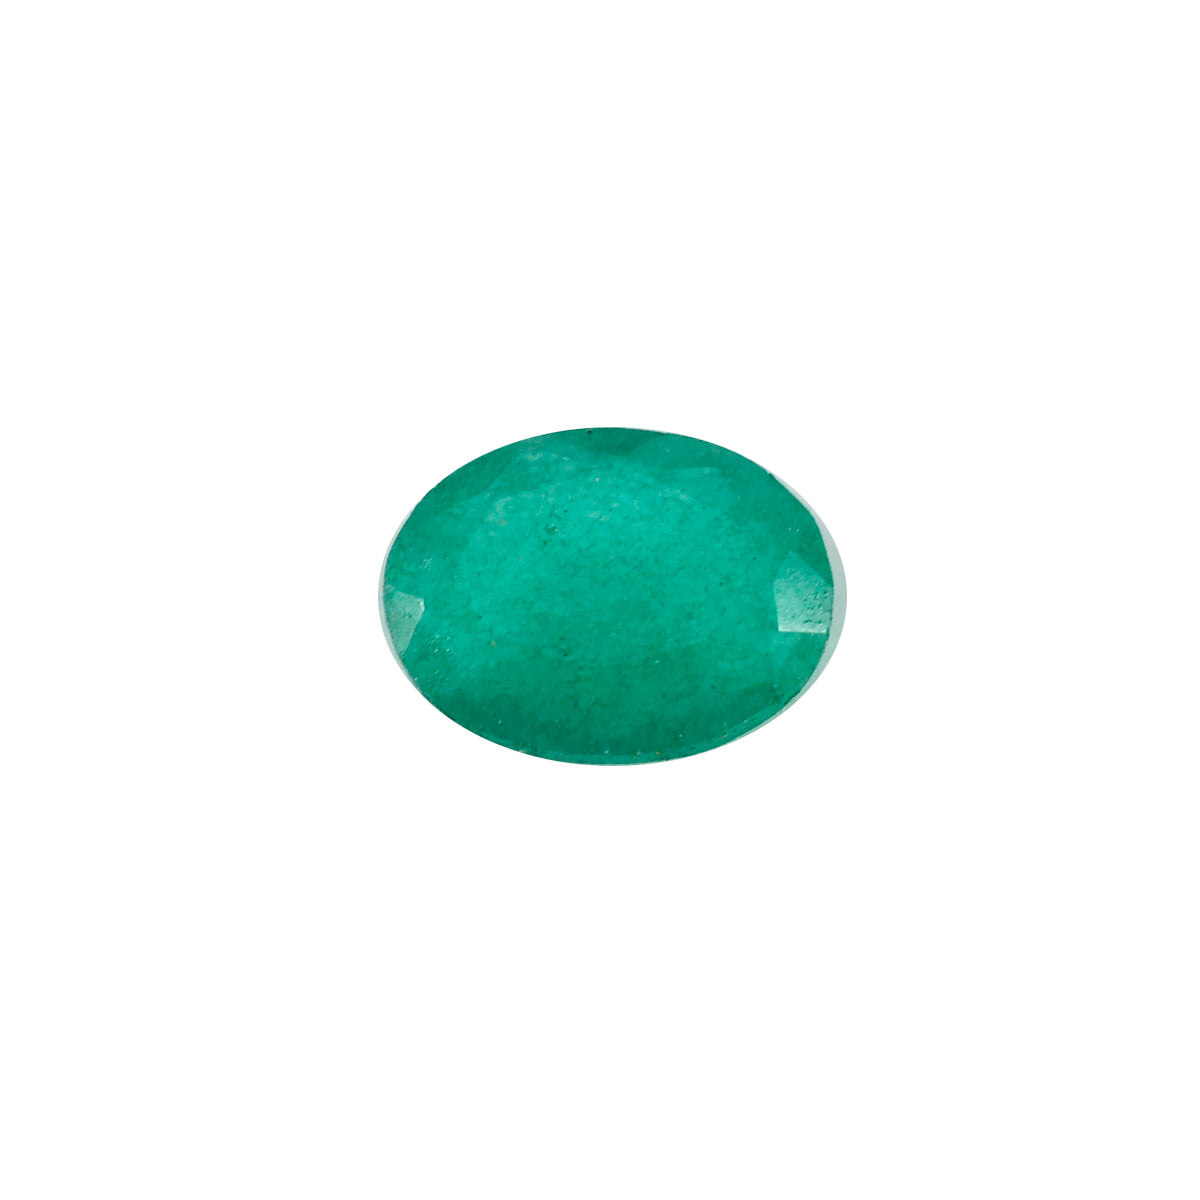 Riyogems 1PC echte groene jaspis gefacetteerd 10x14 mm ovale vorm uitstekende kwaliteit losse edelstenen